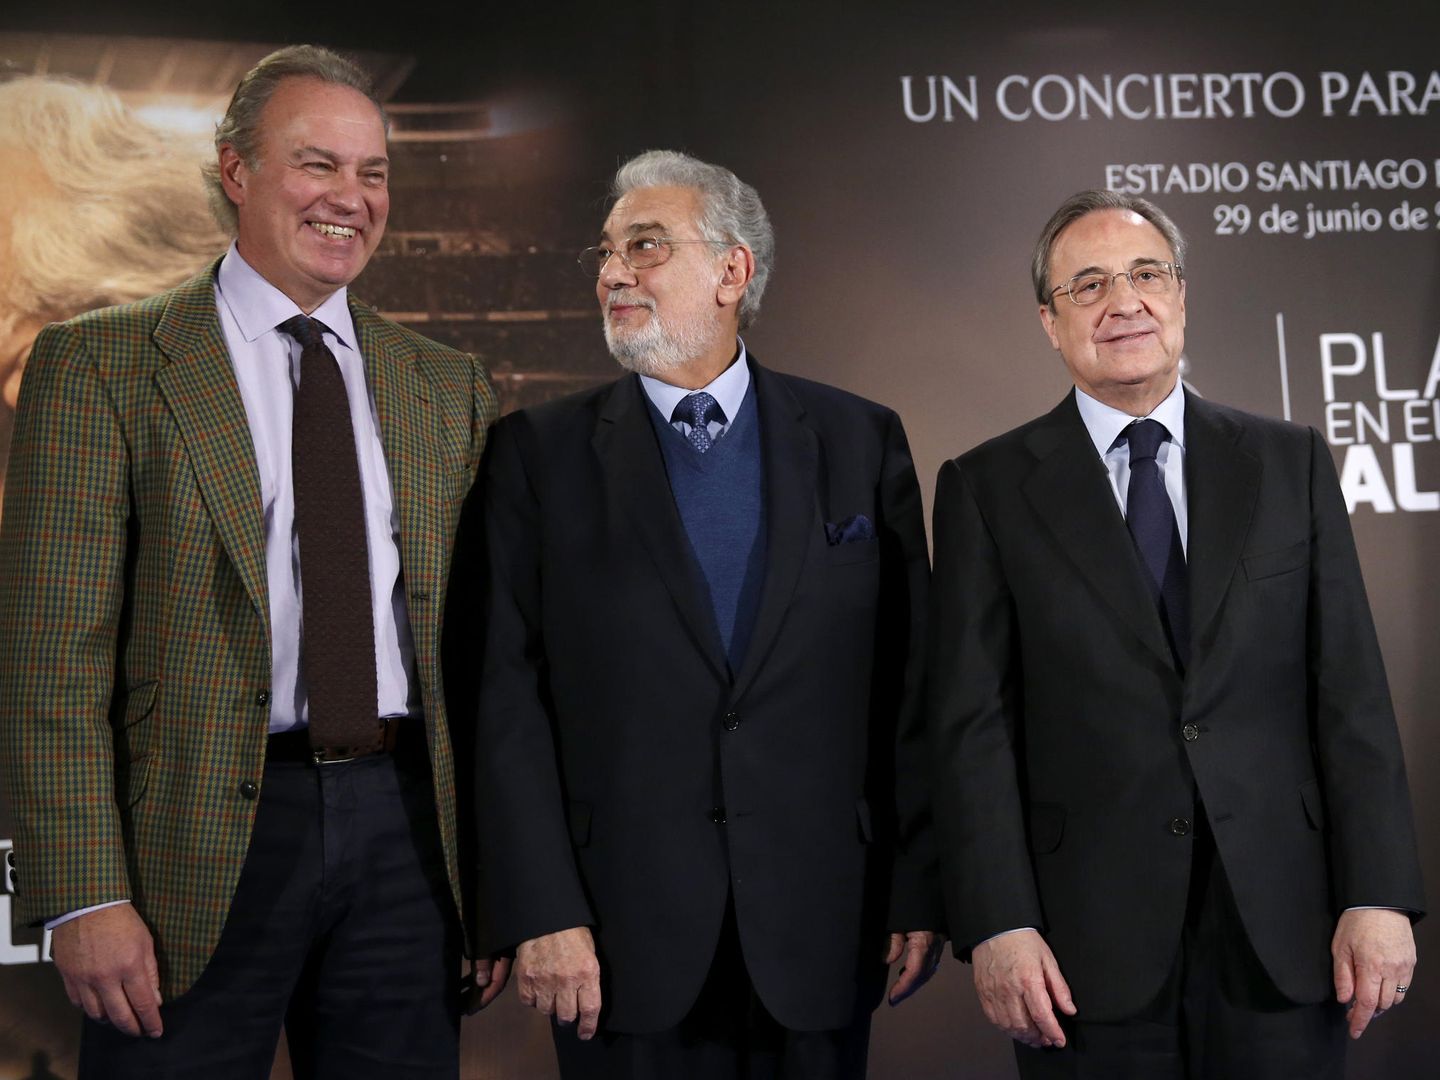 Presentación del concierto homenaje a Plácido Domingo, entre Bertín Osborne y Florentino Pérez, del 29 de junio de 2016 en el Bernabéu. (EFE)